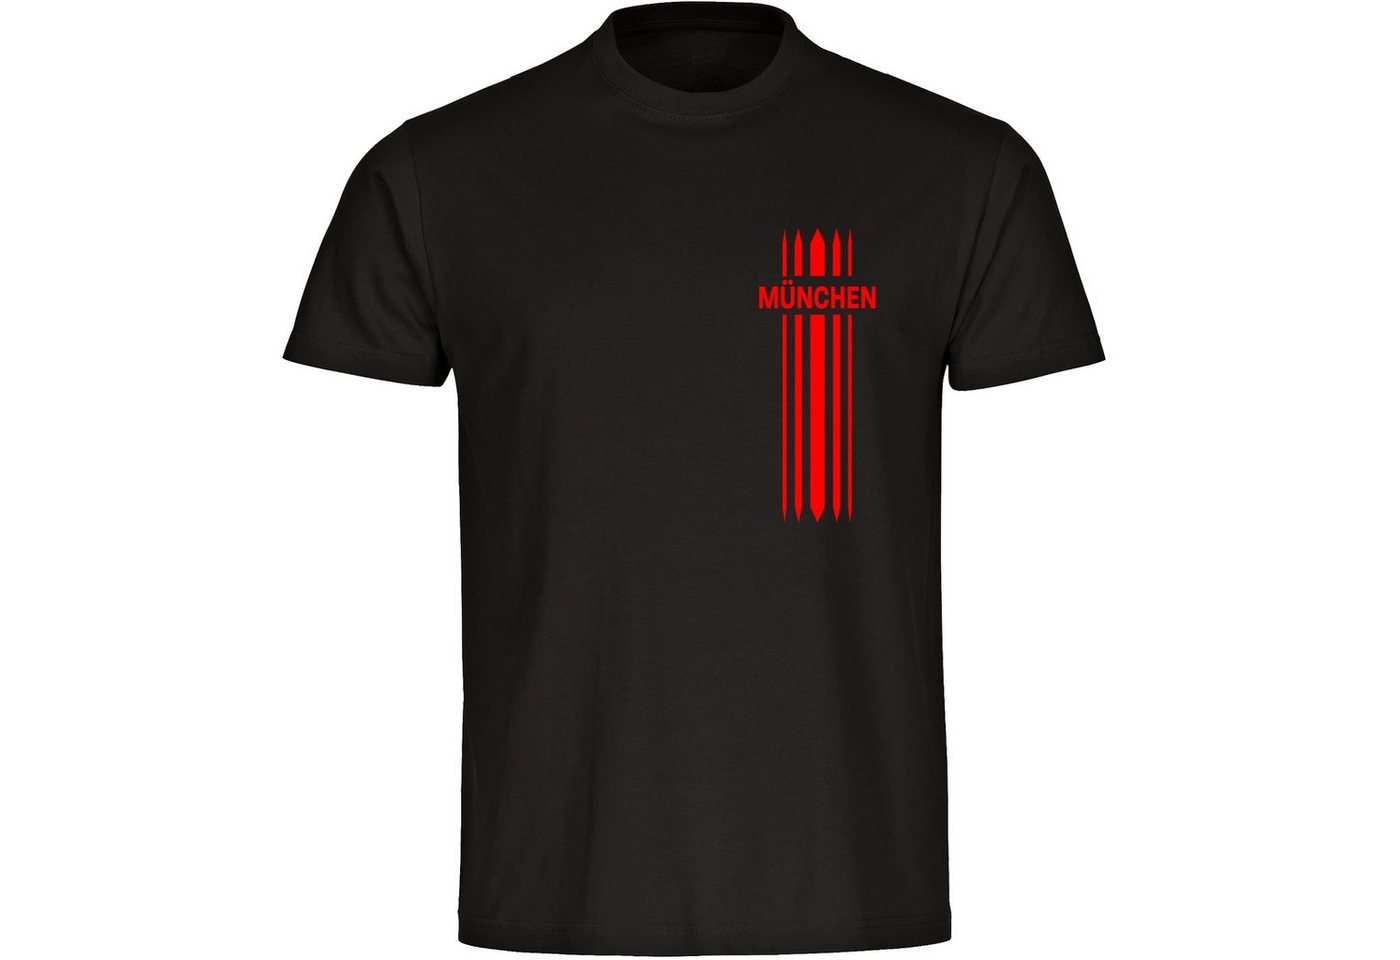 multifanshop T-Shirt Herren München rot - Streifen - Männer von multifanshop